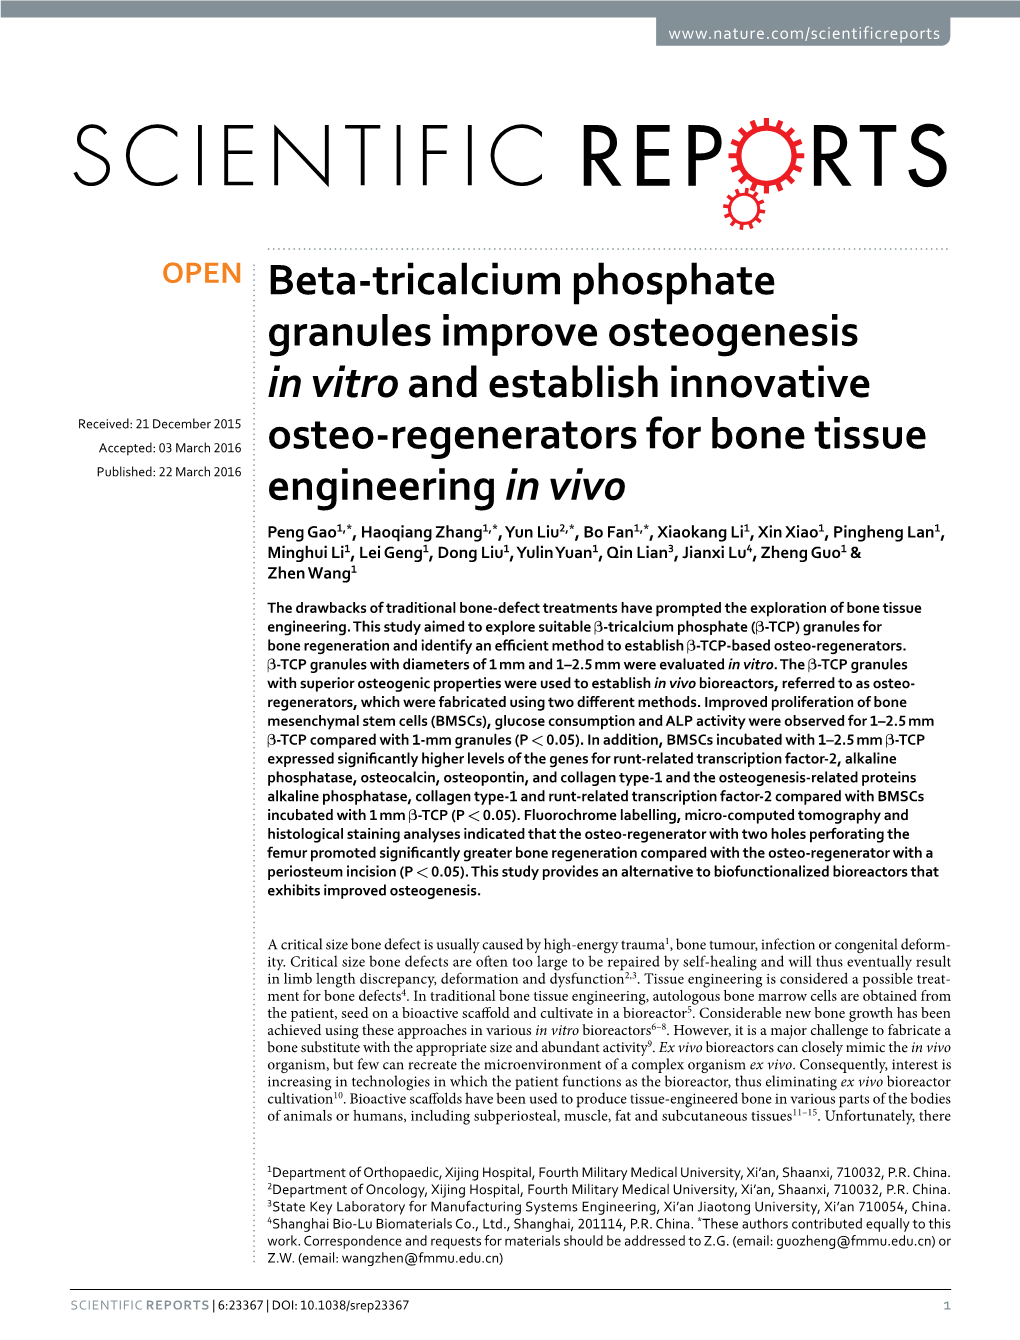 Beta-Tricalcium Phosphate Granules Improve Osteogenesis in Vitro And